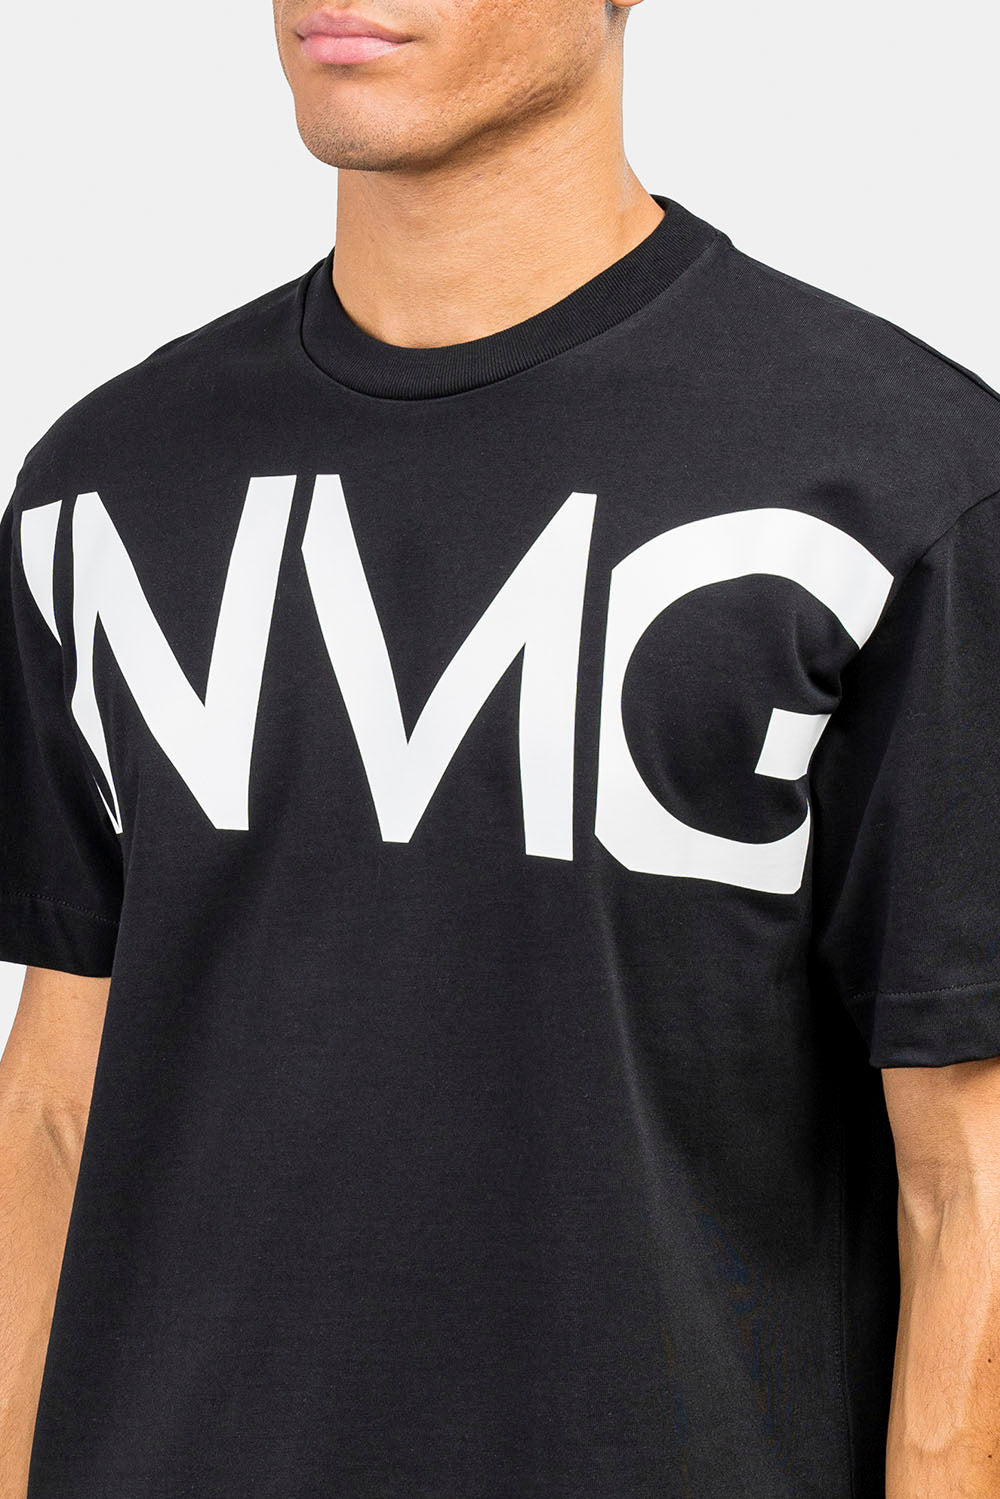 INMG Print Comfort T-shirt